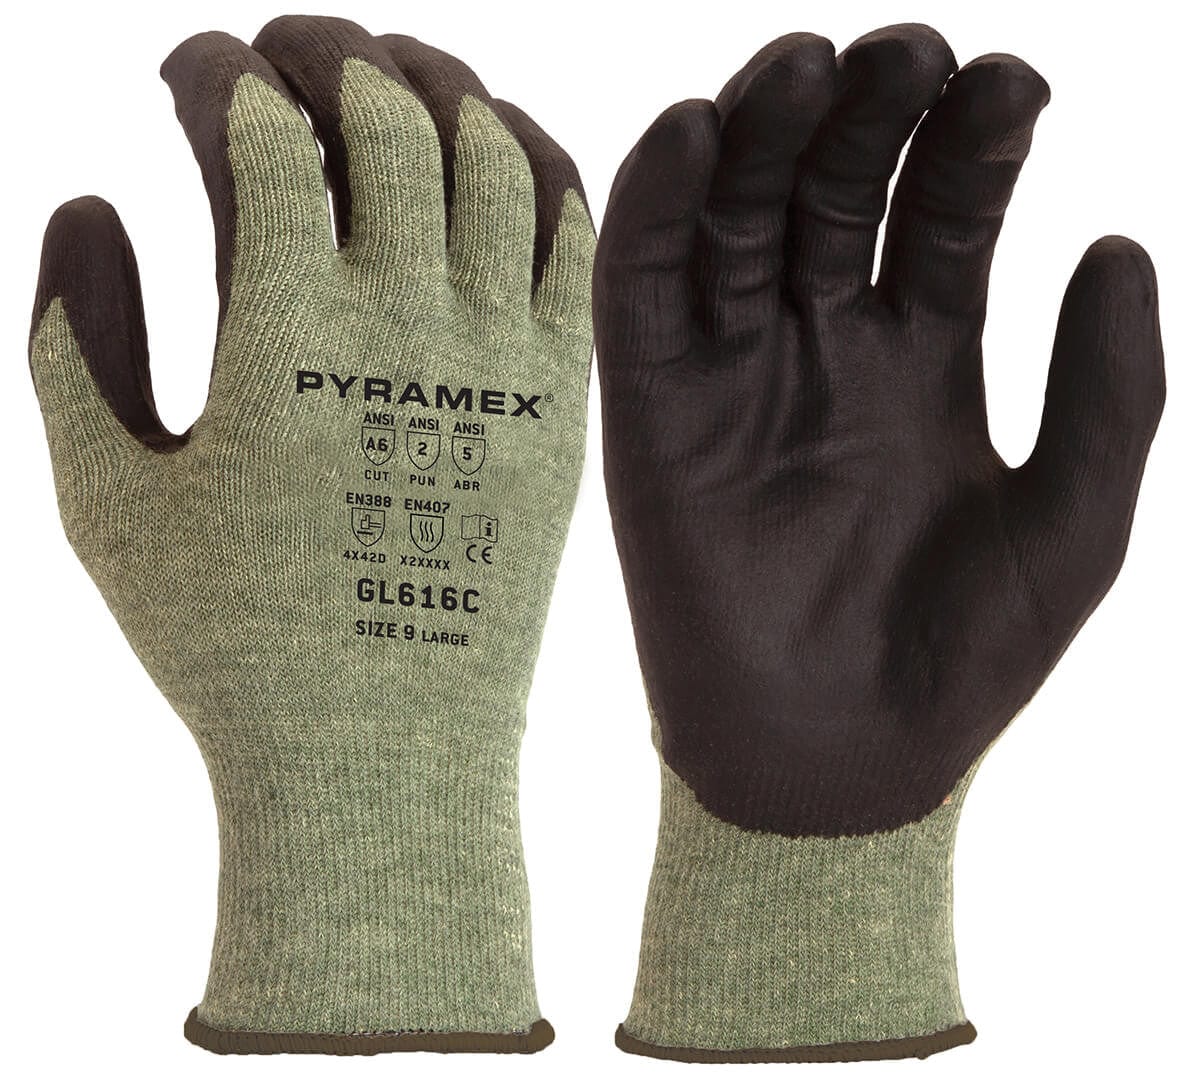 Pyramex GL616 Cut-Resistant A6 Nitrile Foam Dipped Gloves GL616C